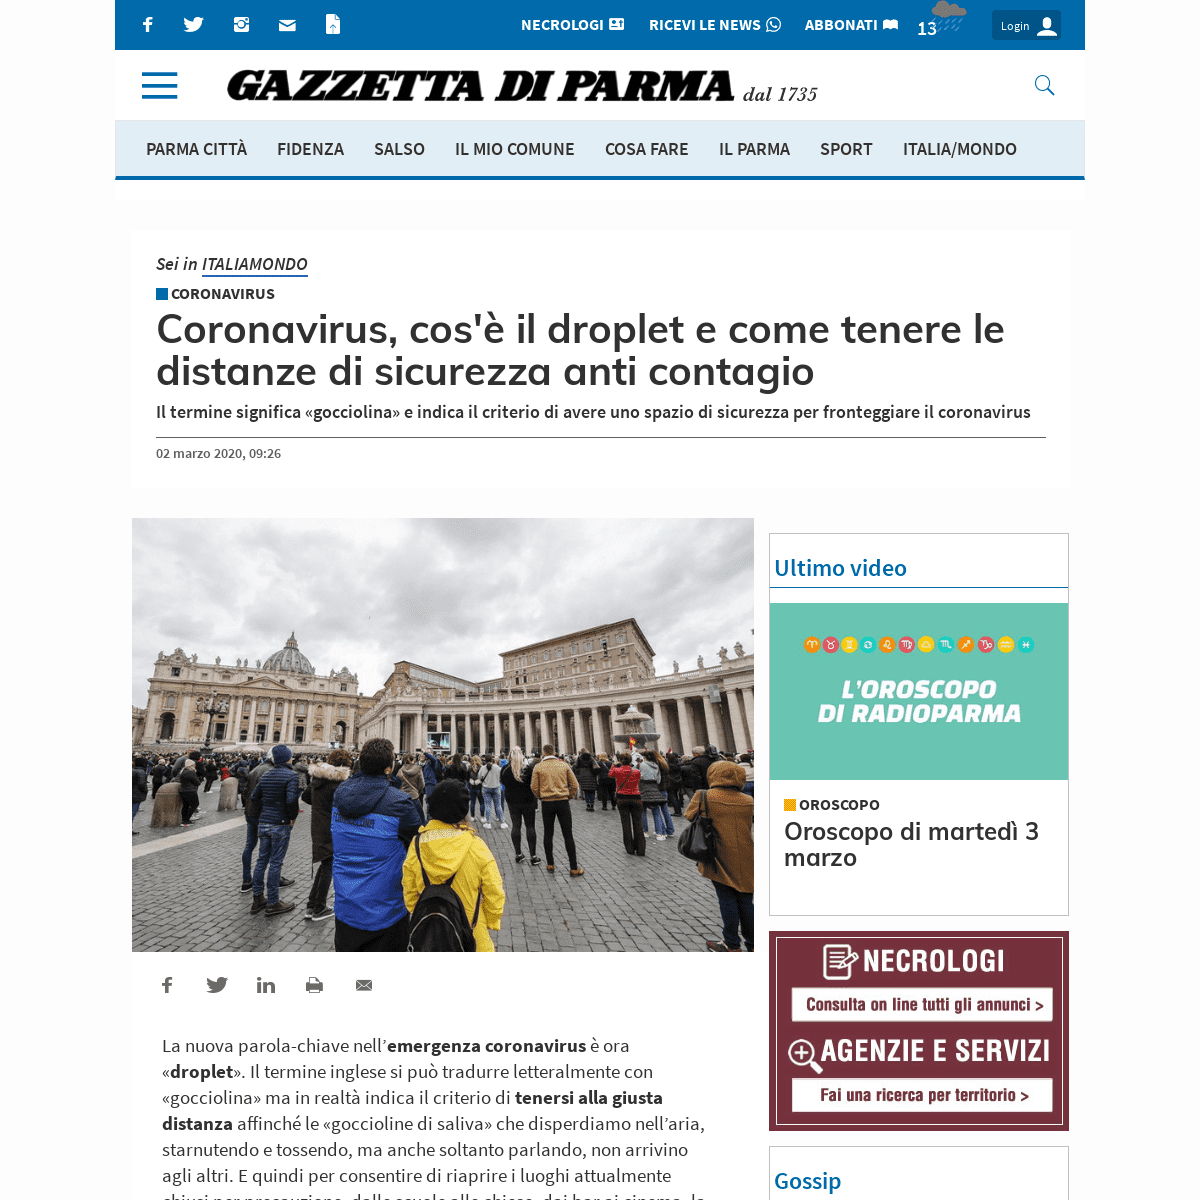 Coronavirus, cos'Ã¨ il droplet e come tenere le distanze di sicurezza anti contagio - Gazzetta di Parma